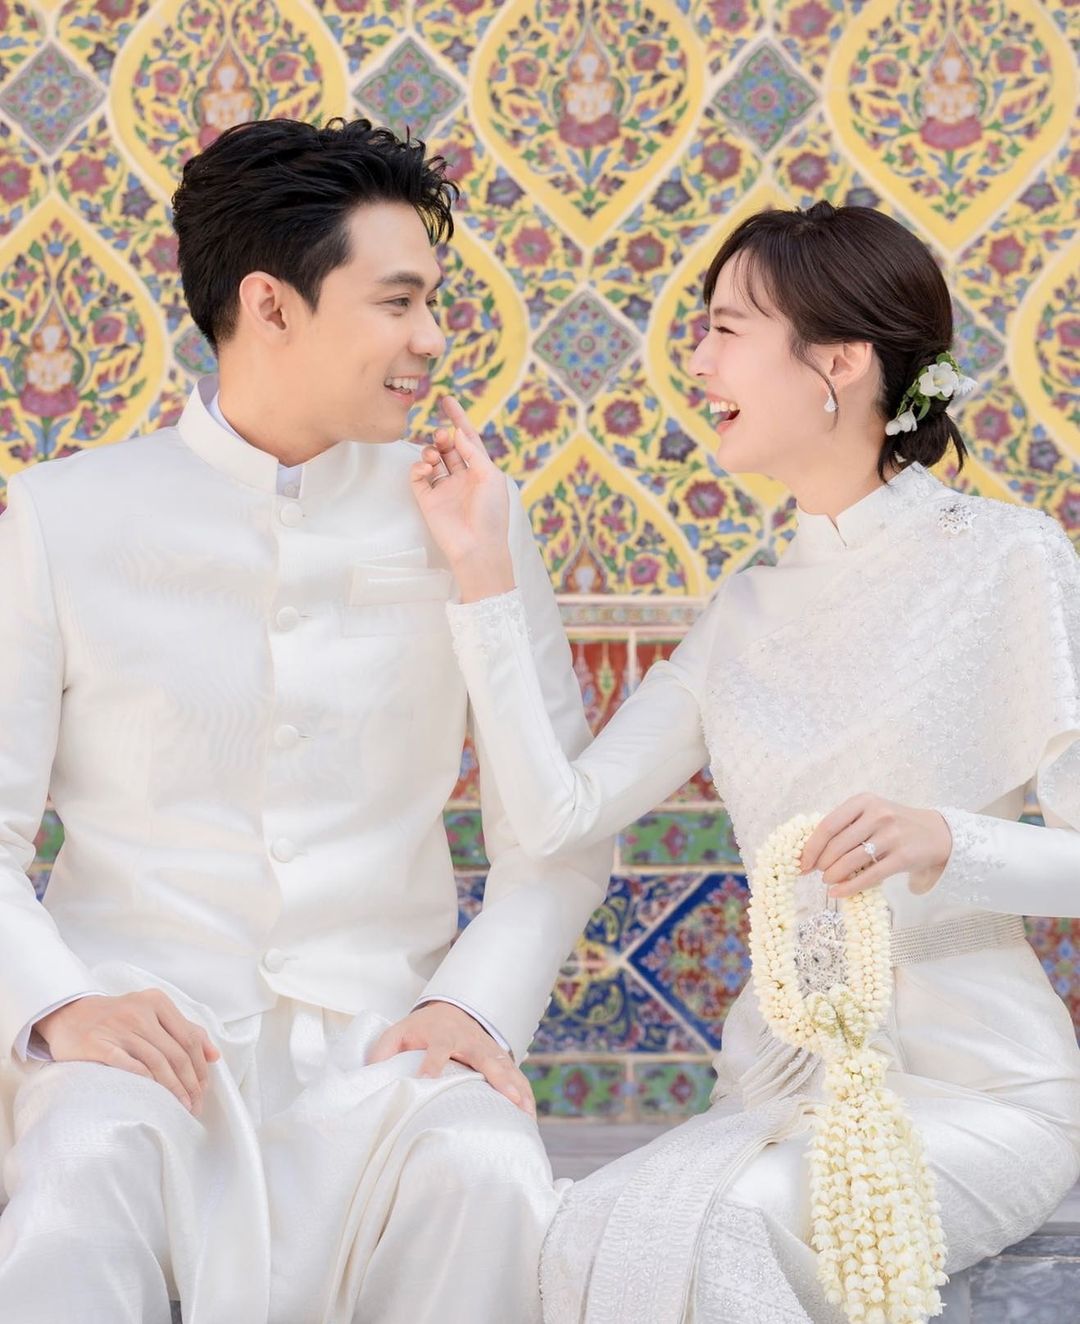 Showbiz Thái Lan 2022: Loạt cặp đôi “phim giả tình thật” có kết thúc viên mãn, một đôi bạn thân “cập bến” thành công ngay cuối năm - Ảnh 6.